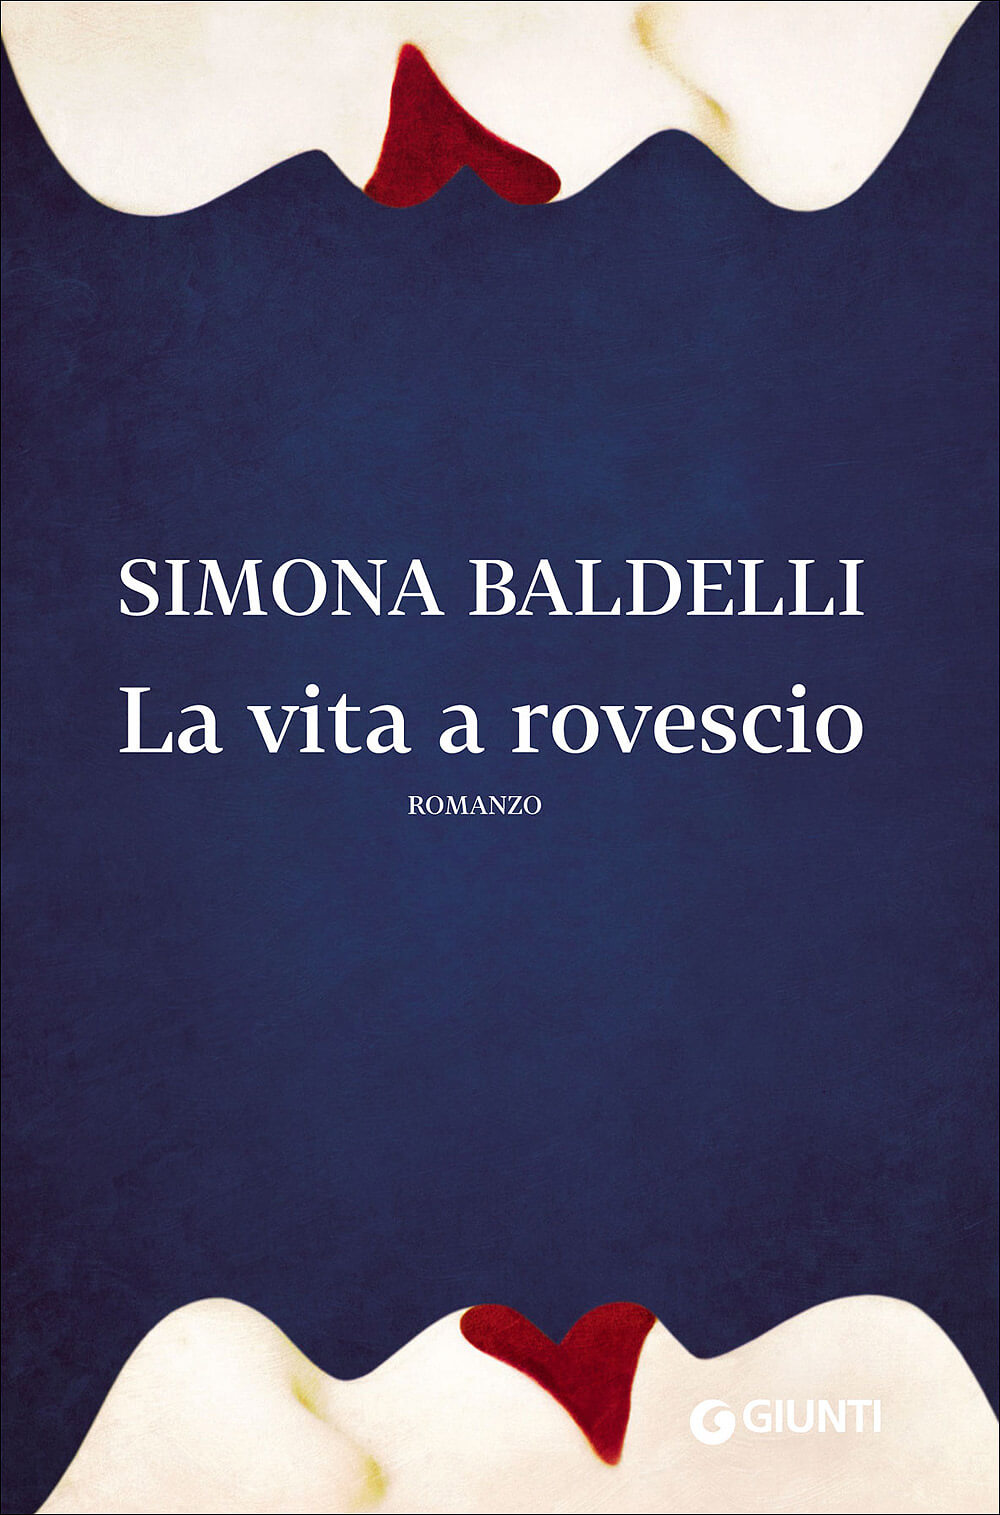 Giornata Mondiale del Libro, ecco 7 romanzi LGBT da leggere - La vita a Rovescio Simona Baldelli - Gay.it